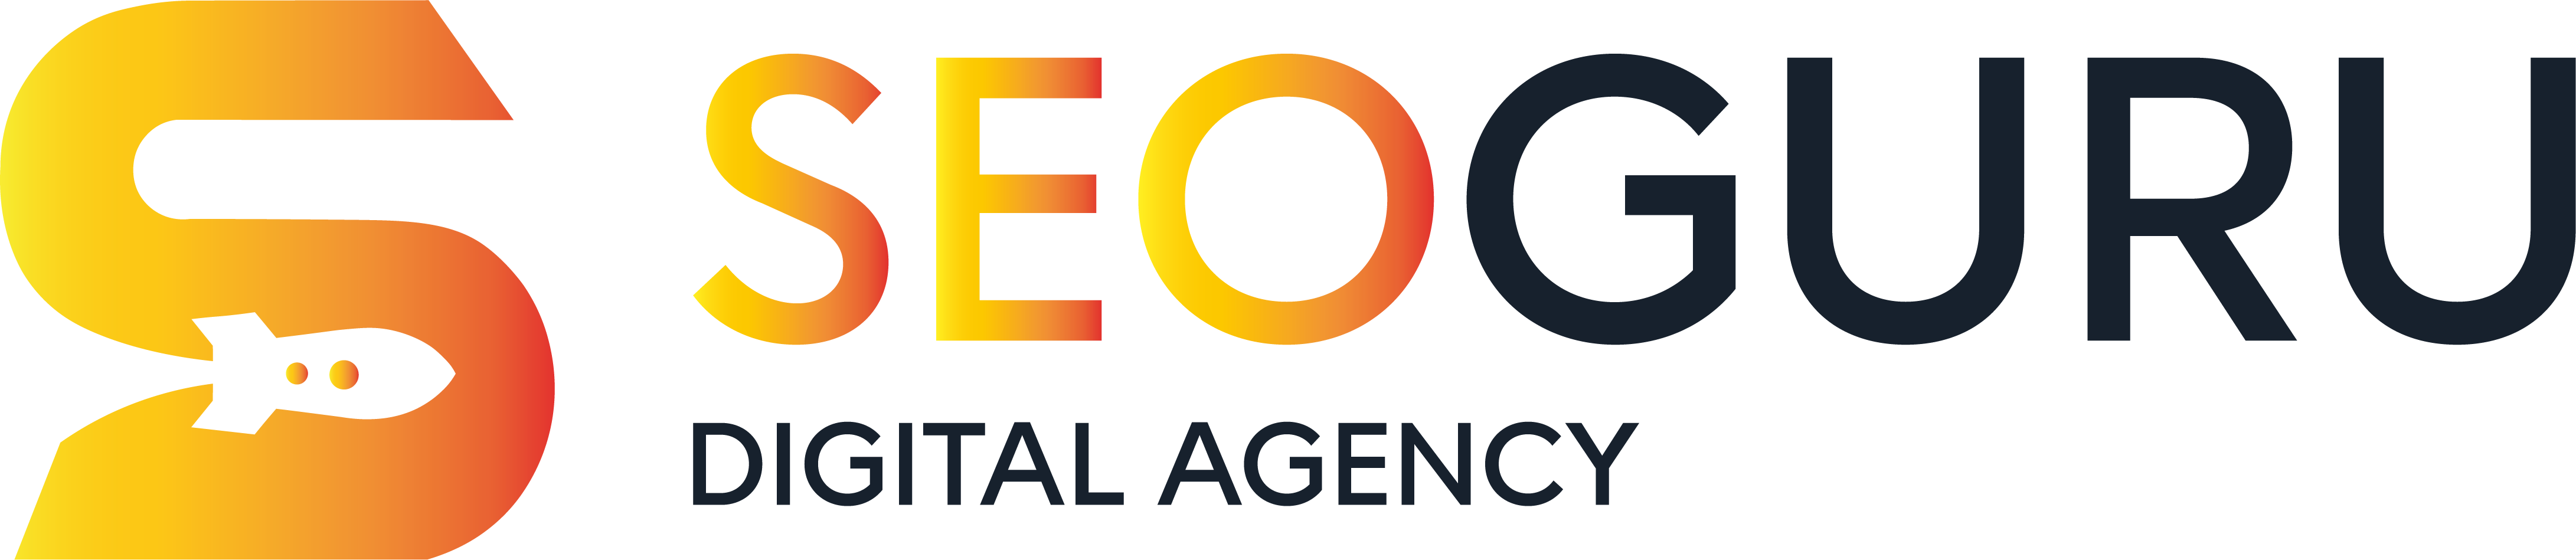 seoguru digital agency